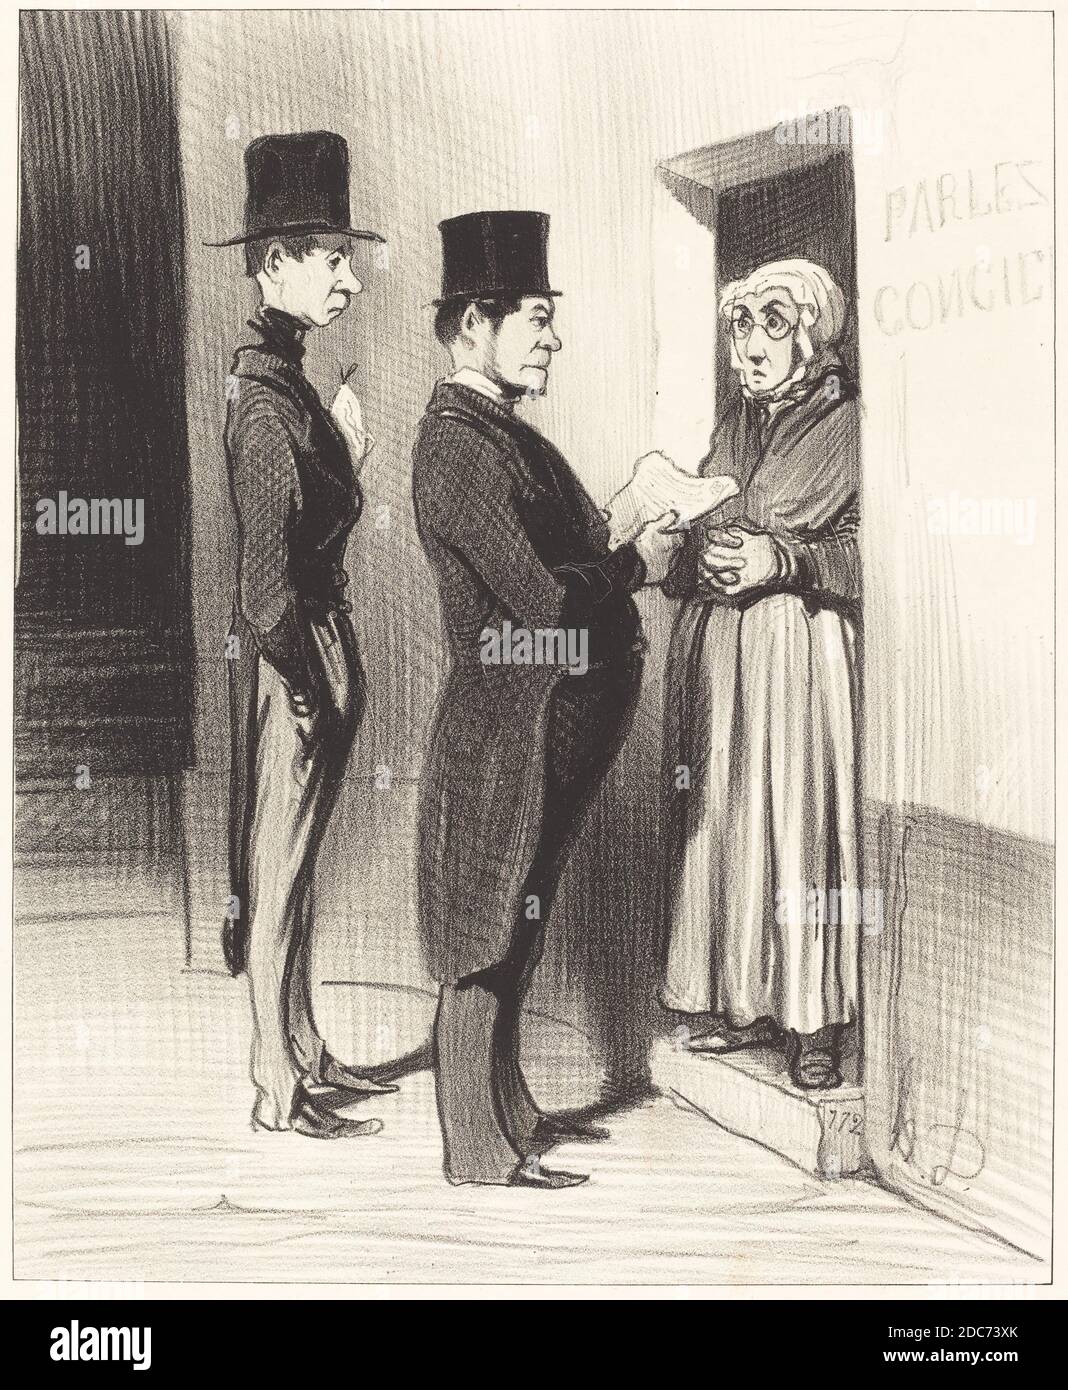 Honoré Daumier, (artista), francese, 1808 - 1879, et parlant a sa portière ainssi déclarée..., Les Gens de justice: pl.10, (serie), 1845, litografia Foto Stock